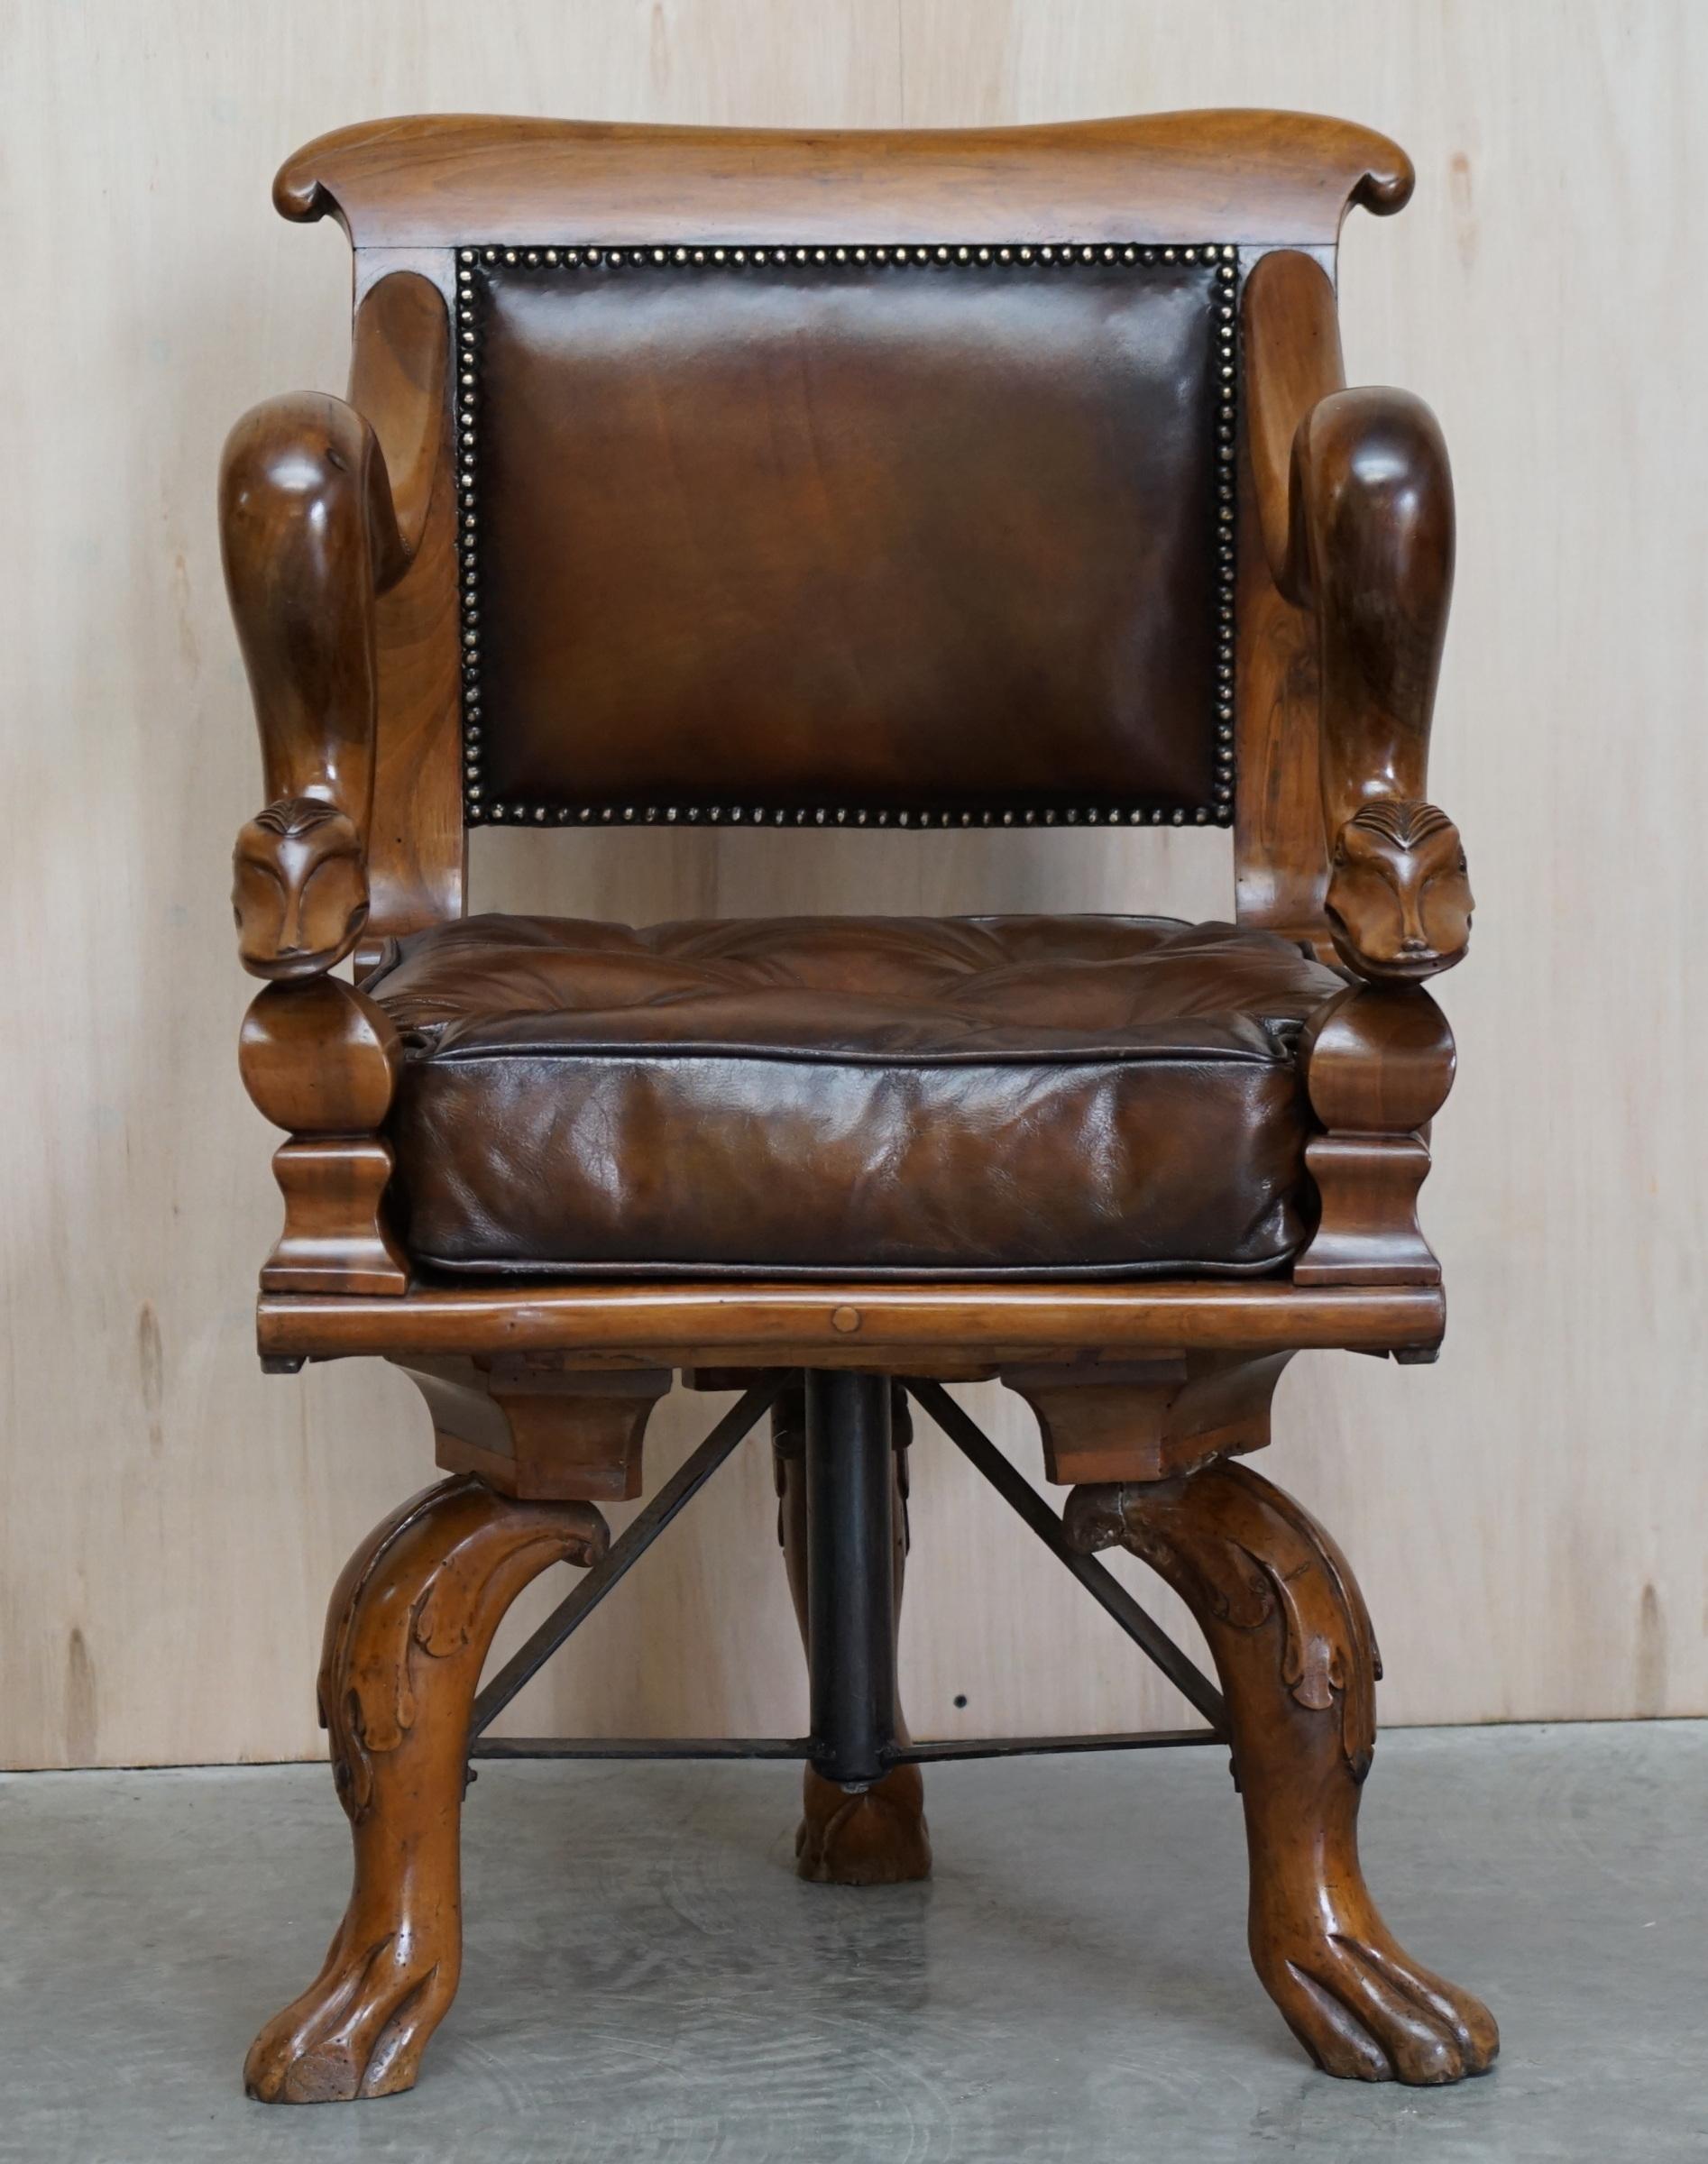 Nous sommes ravis d'offrir ce fauteuil pivotant très rare et de grande collection, datant d'environ 1830, de style vénitien italien, entièrement restauré

Quelle trouvaille ! Je n'ai jamais vu un autre sculpté avec les bras du dauphin comme